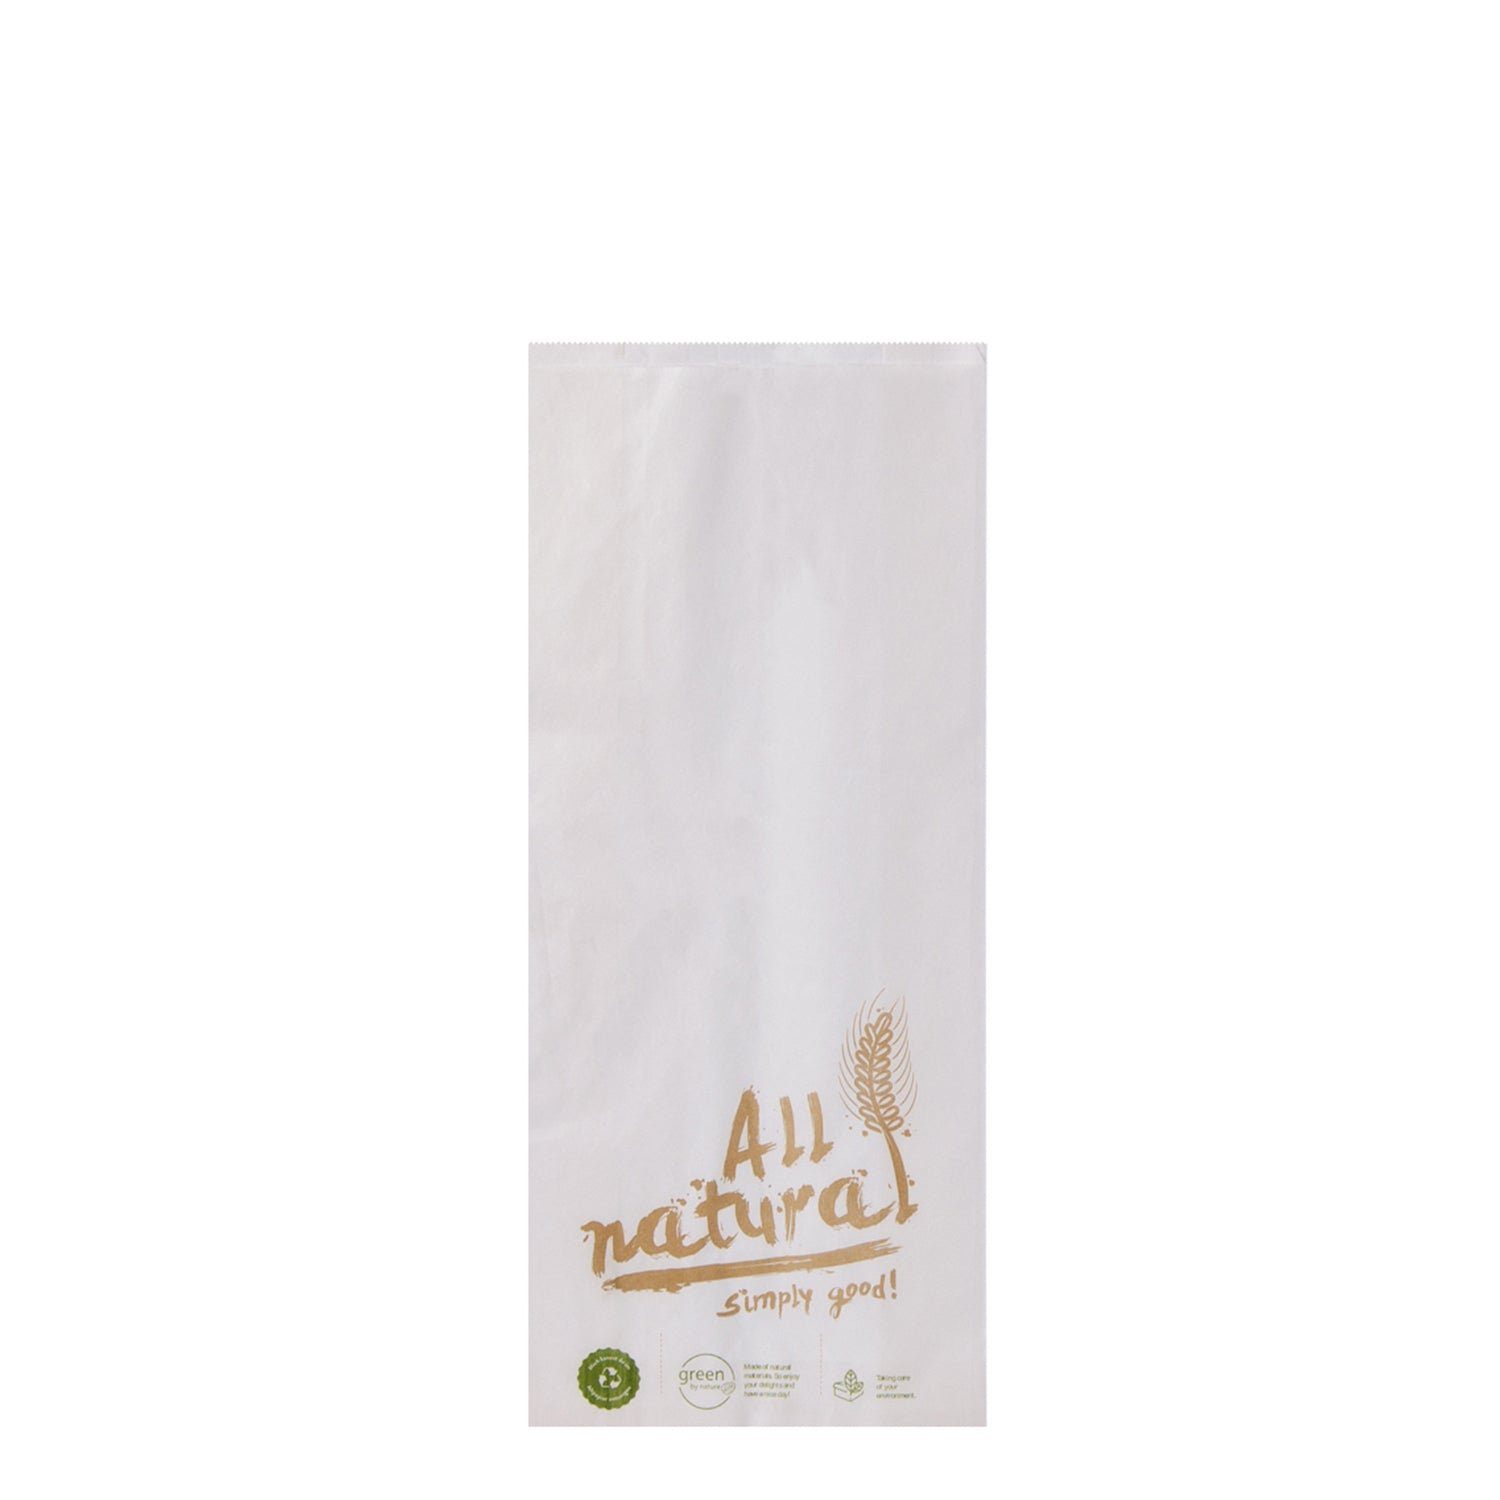 wisefood Einkaufsbeutel Papier Bäckertüte - weiß mit Print "All Natural" Bedruckt